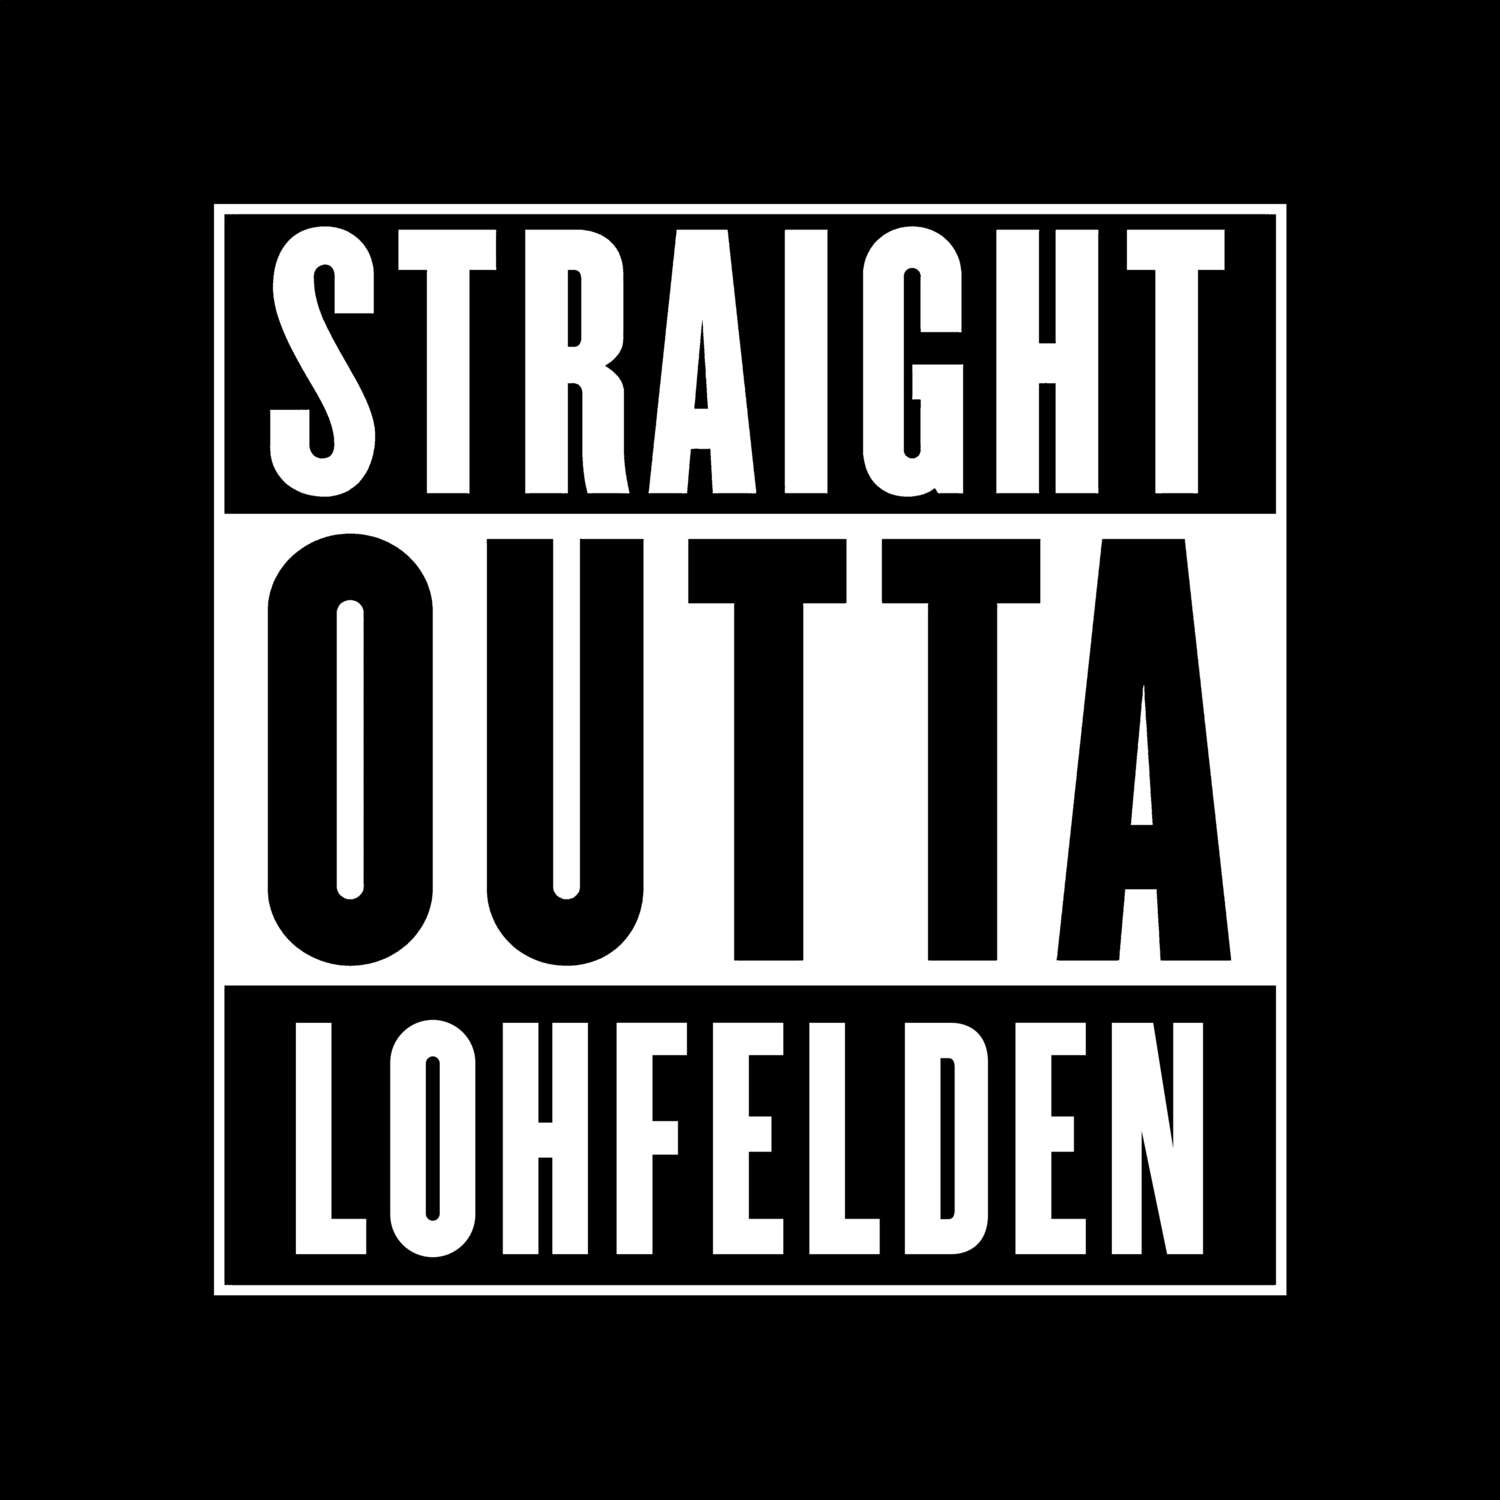 Lohfelden T-Shirt »Straight Outta«